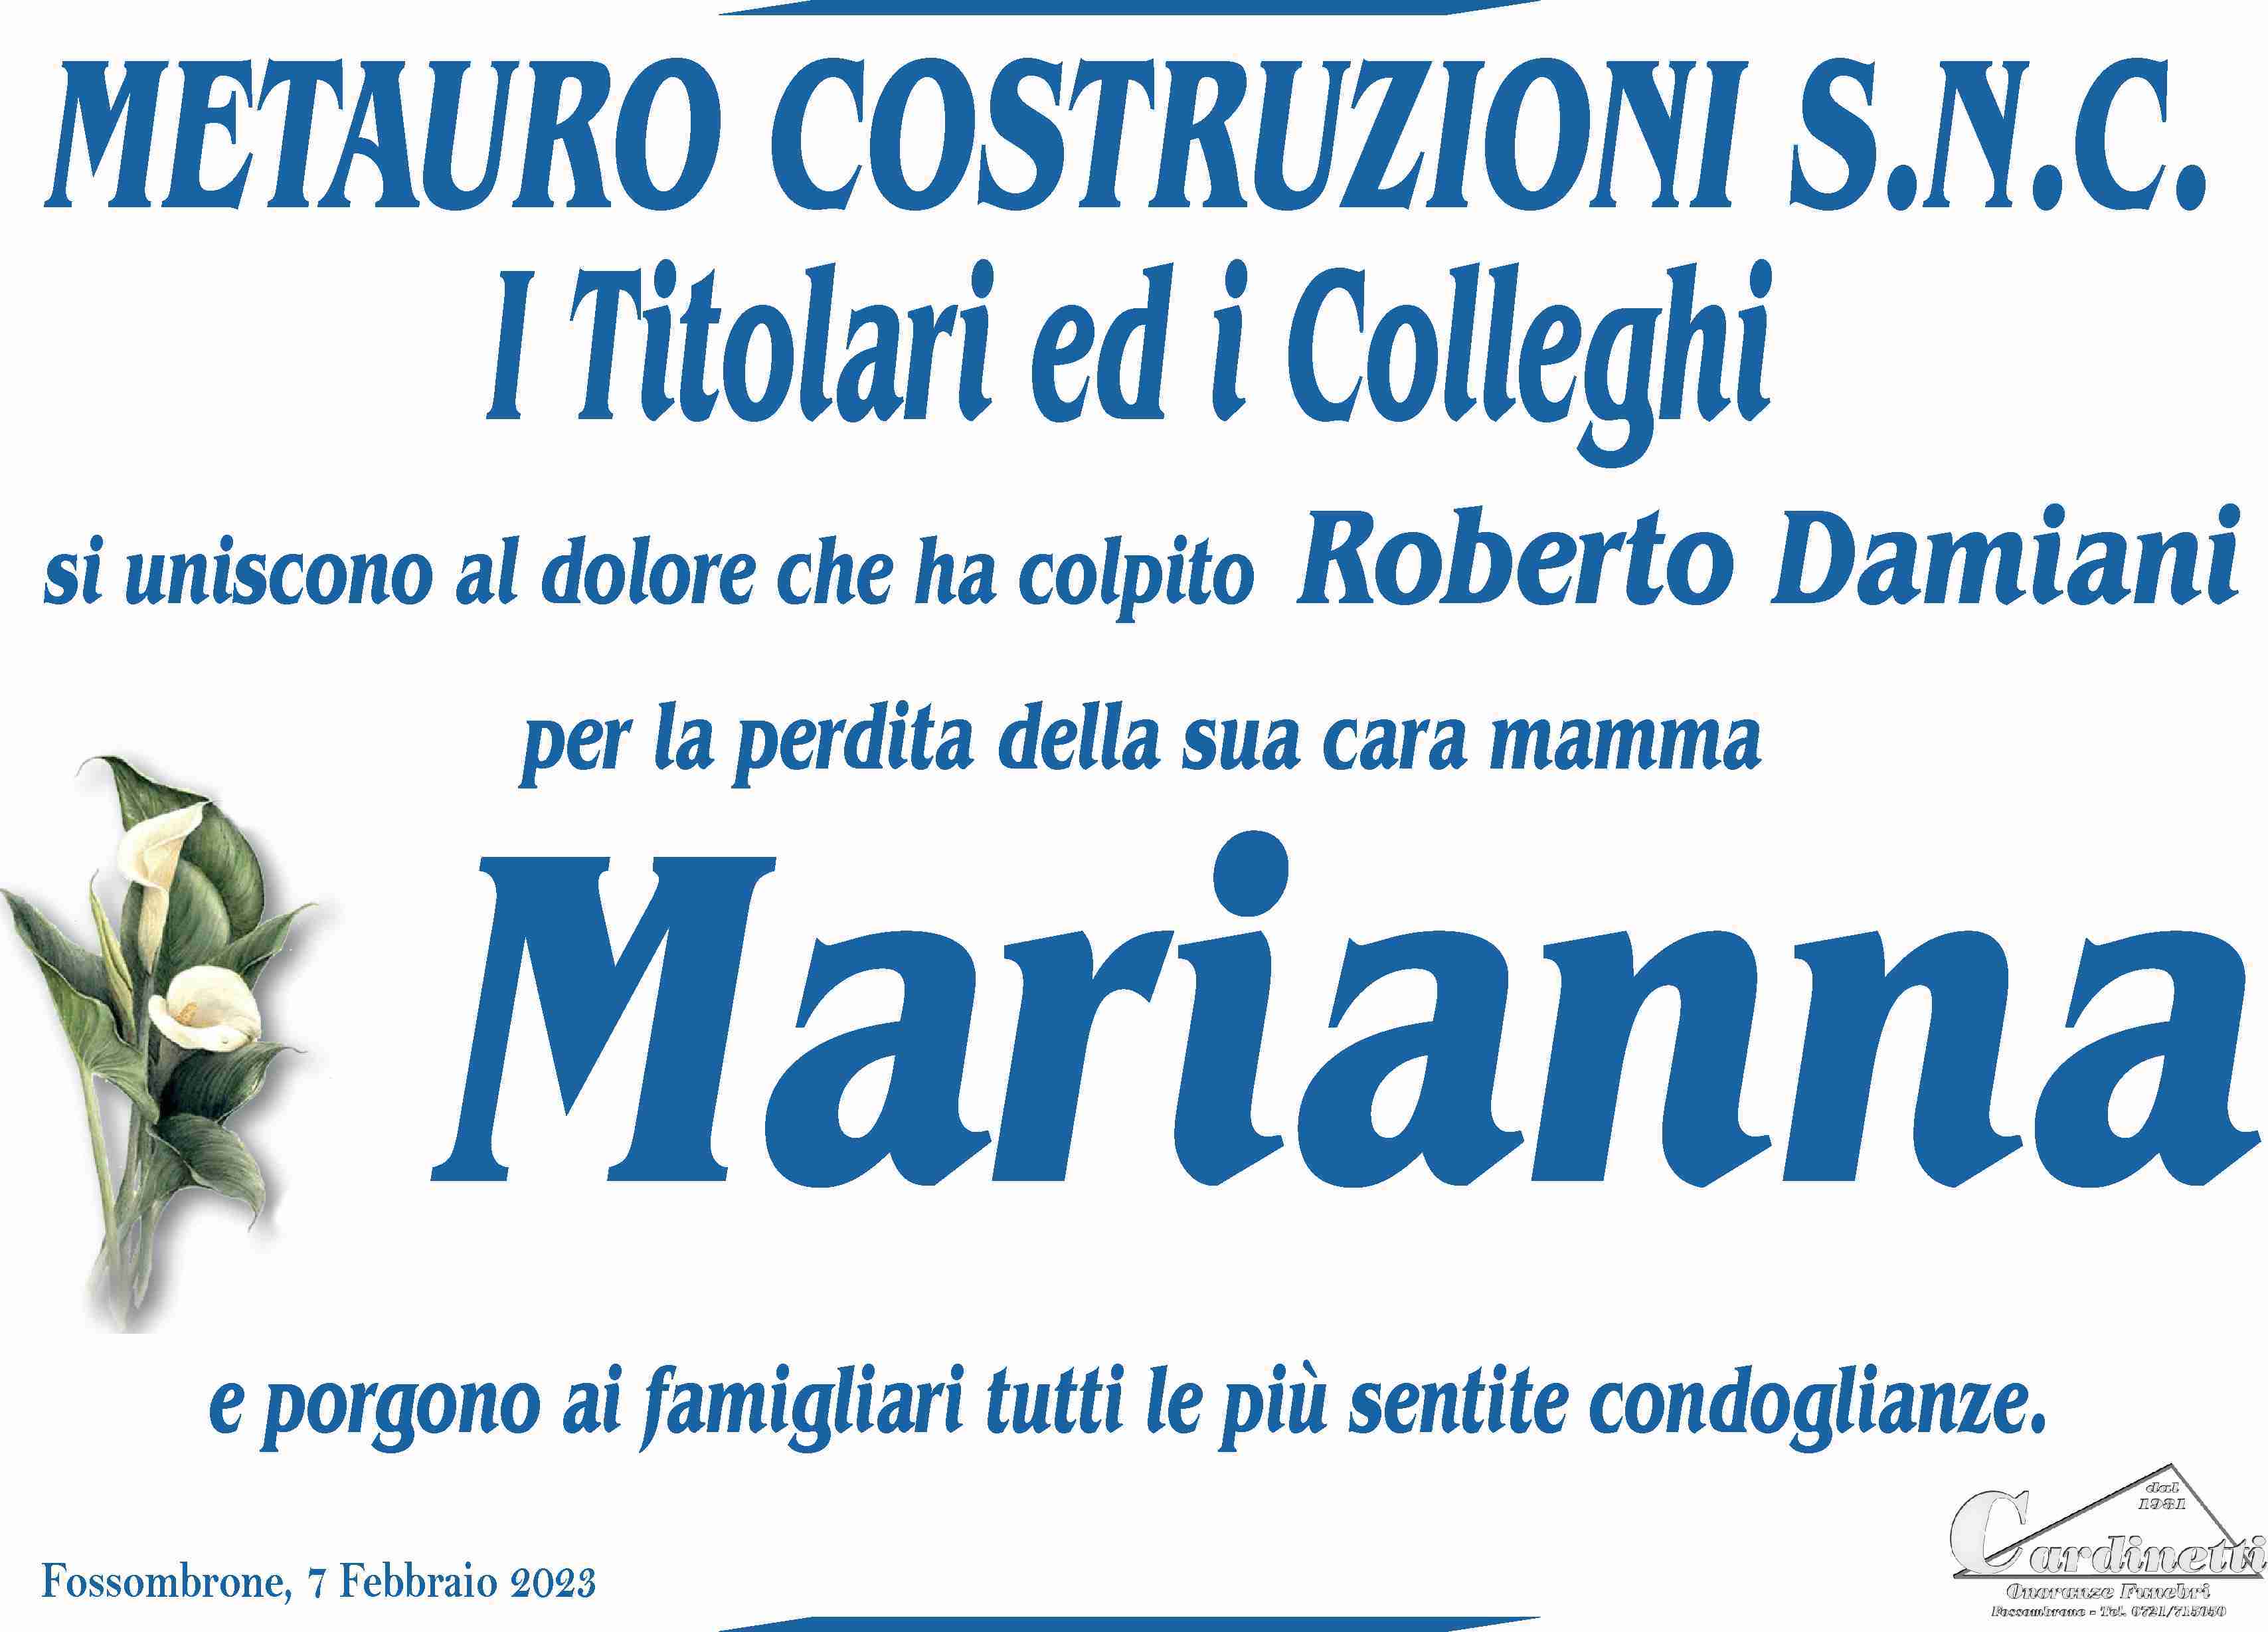 Marianna Cesaroni